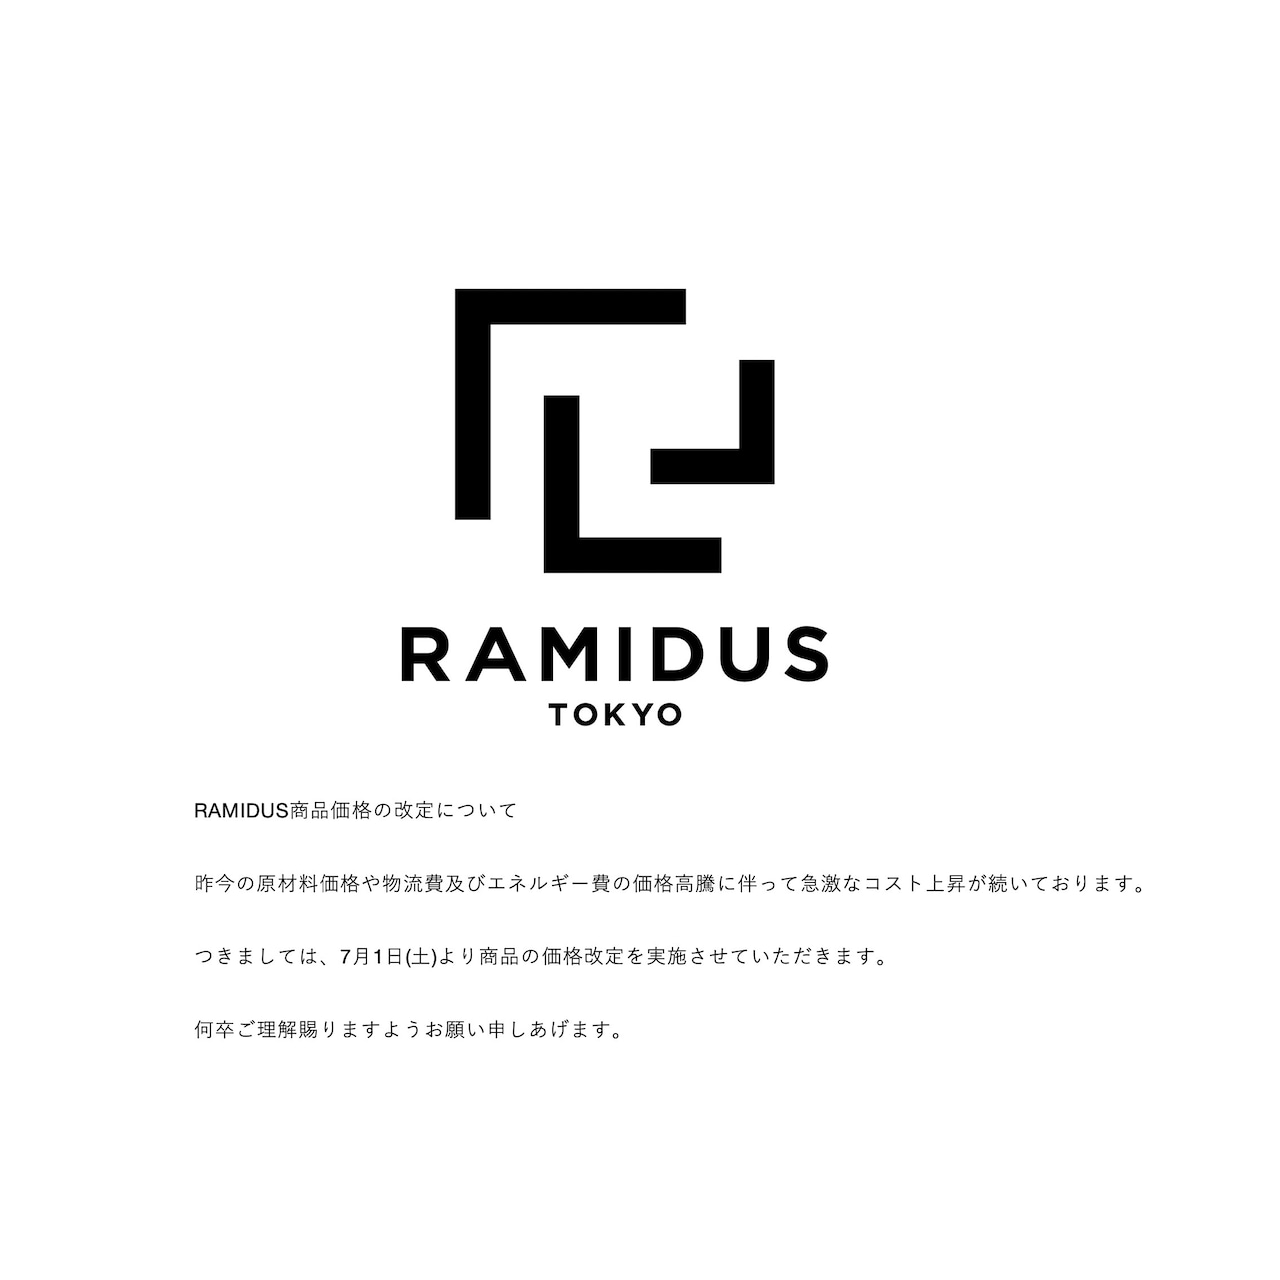 RAMIDUS "BLACK BEAUTY" CAMERA STRAP